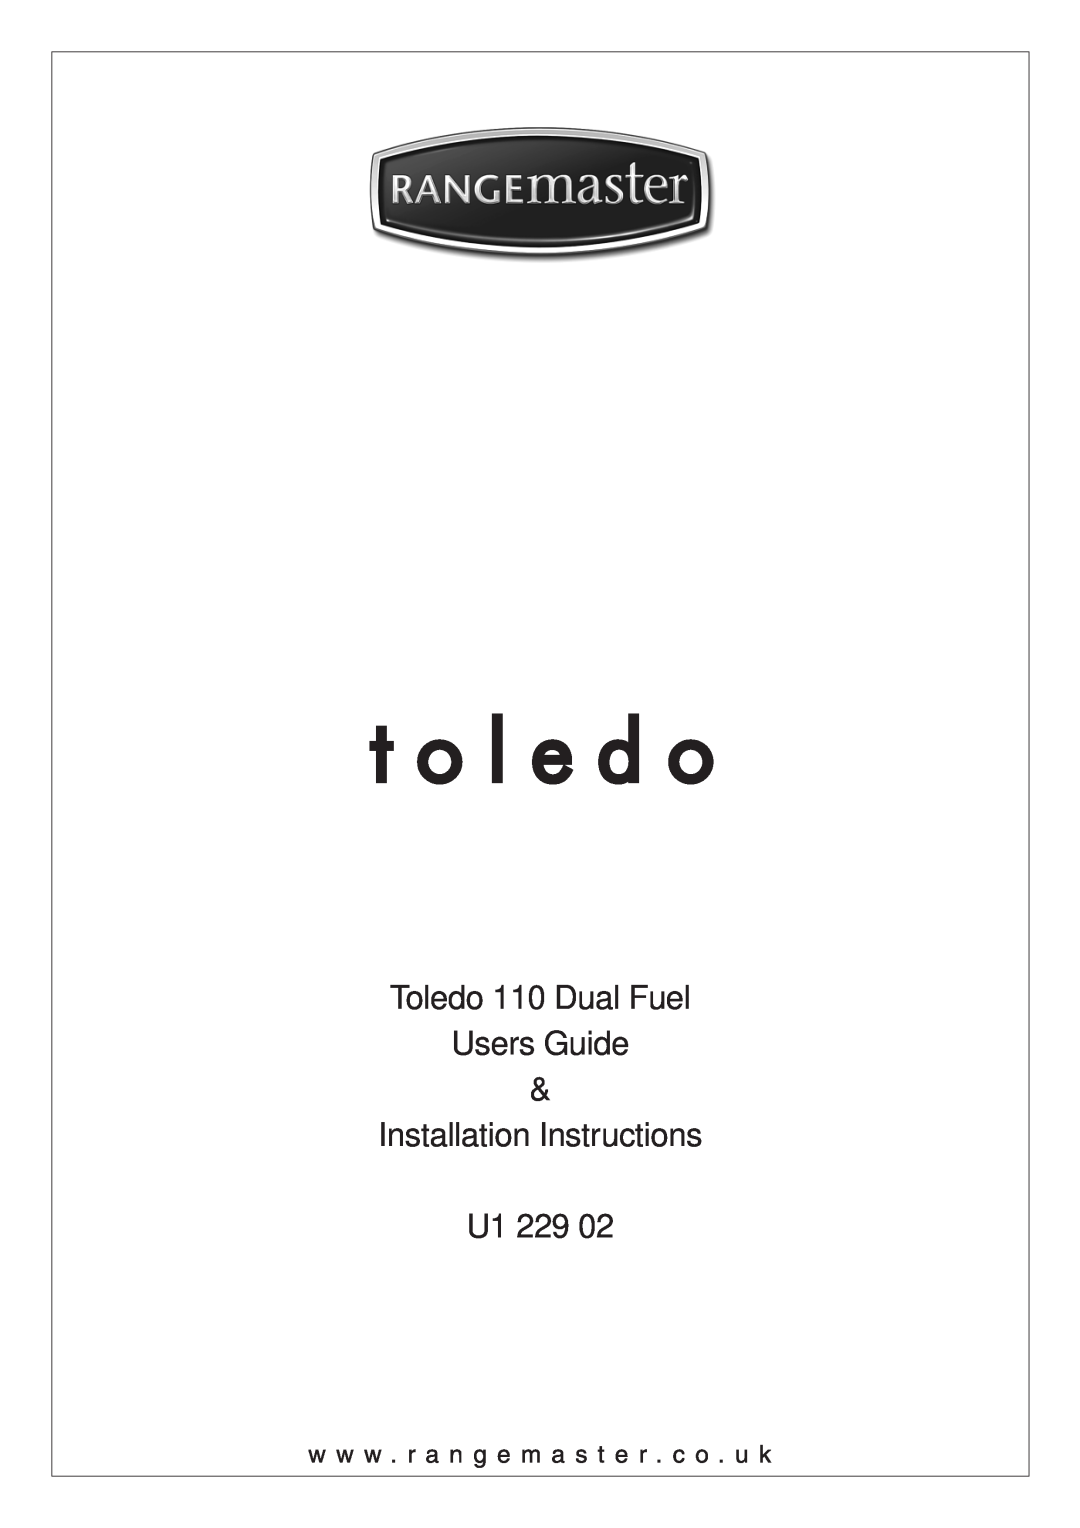 Rangemaster installation instructions Toledo 110 Dual Fuel Users Guide, Installation Instructions, U1 229 